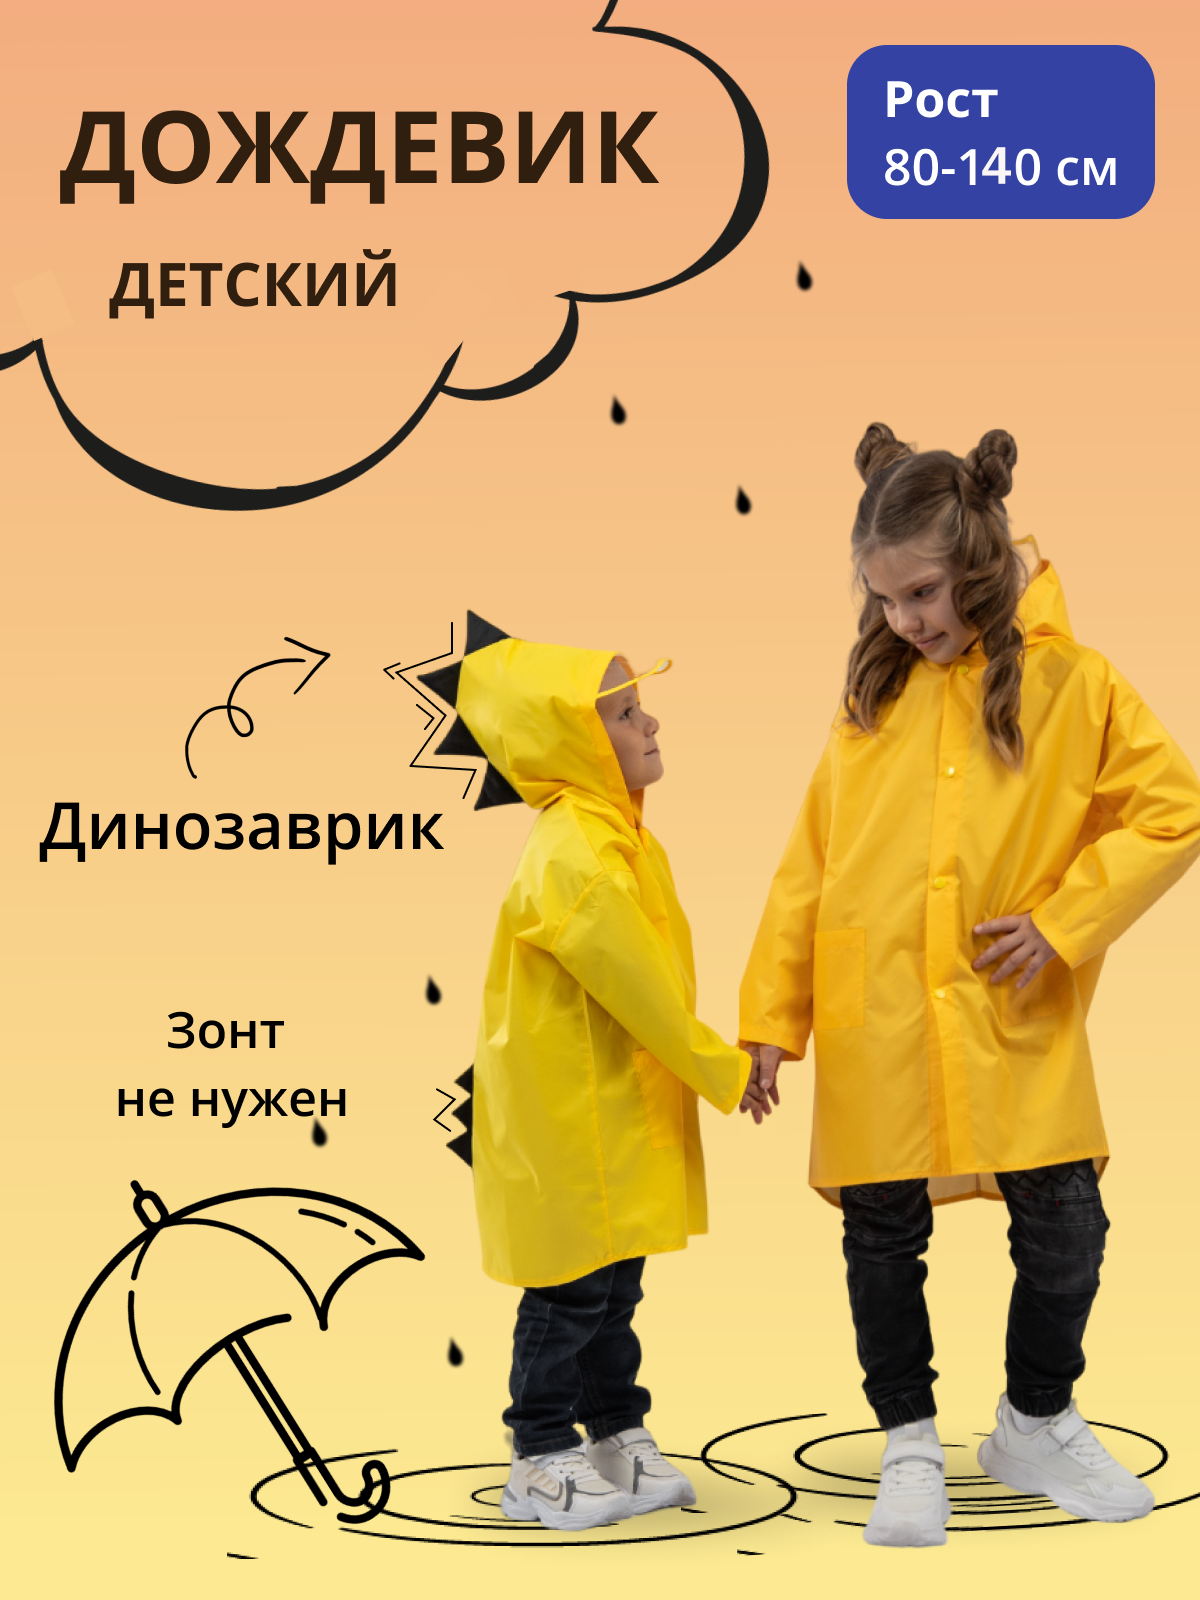 Дождевик детский Под дождем 122855956, желтый, 80 дождевик пончо взрослый тонкий желтый